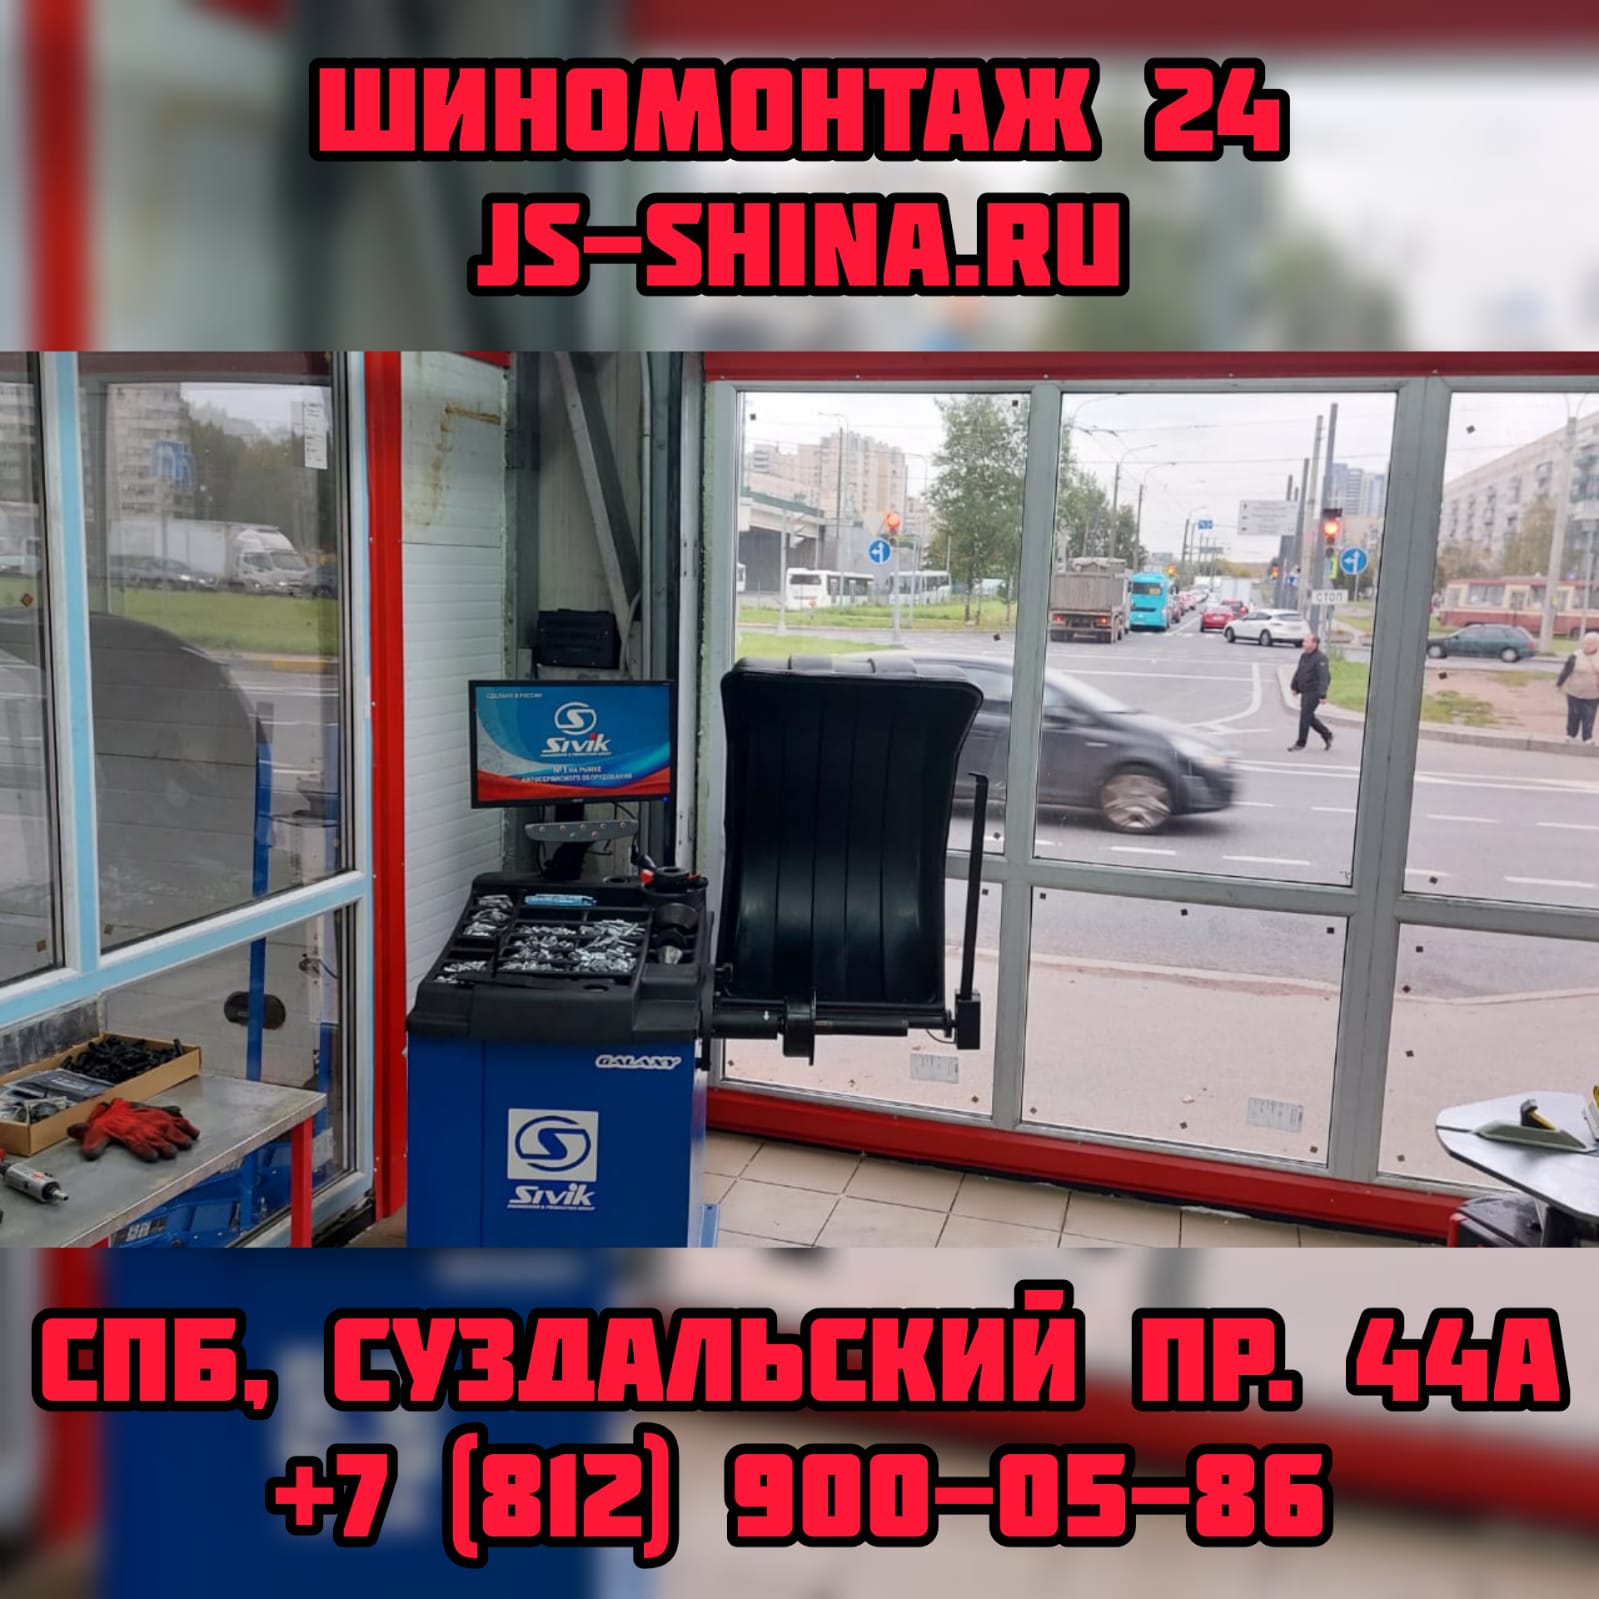 Шиномонтаж 24 часа в СПб, Суздальский пр. 44А ремонт дисков